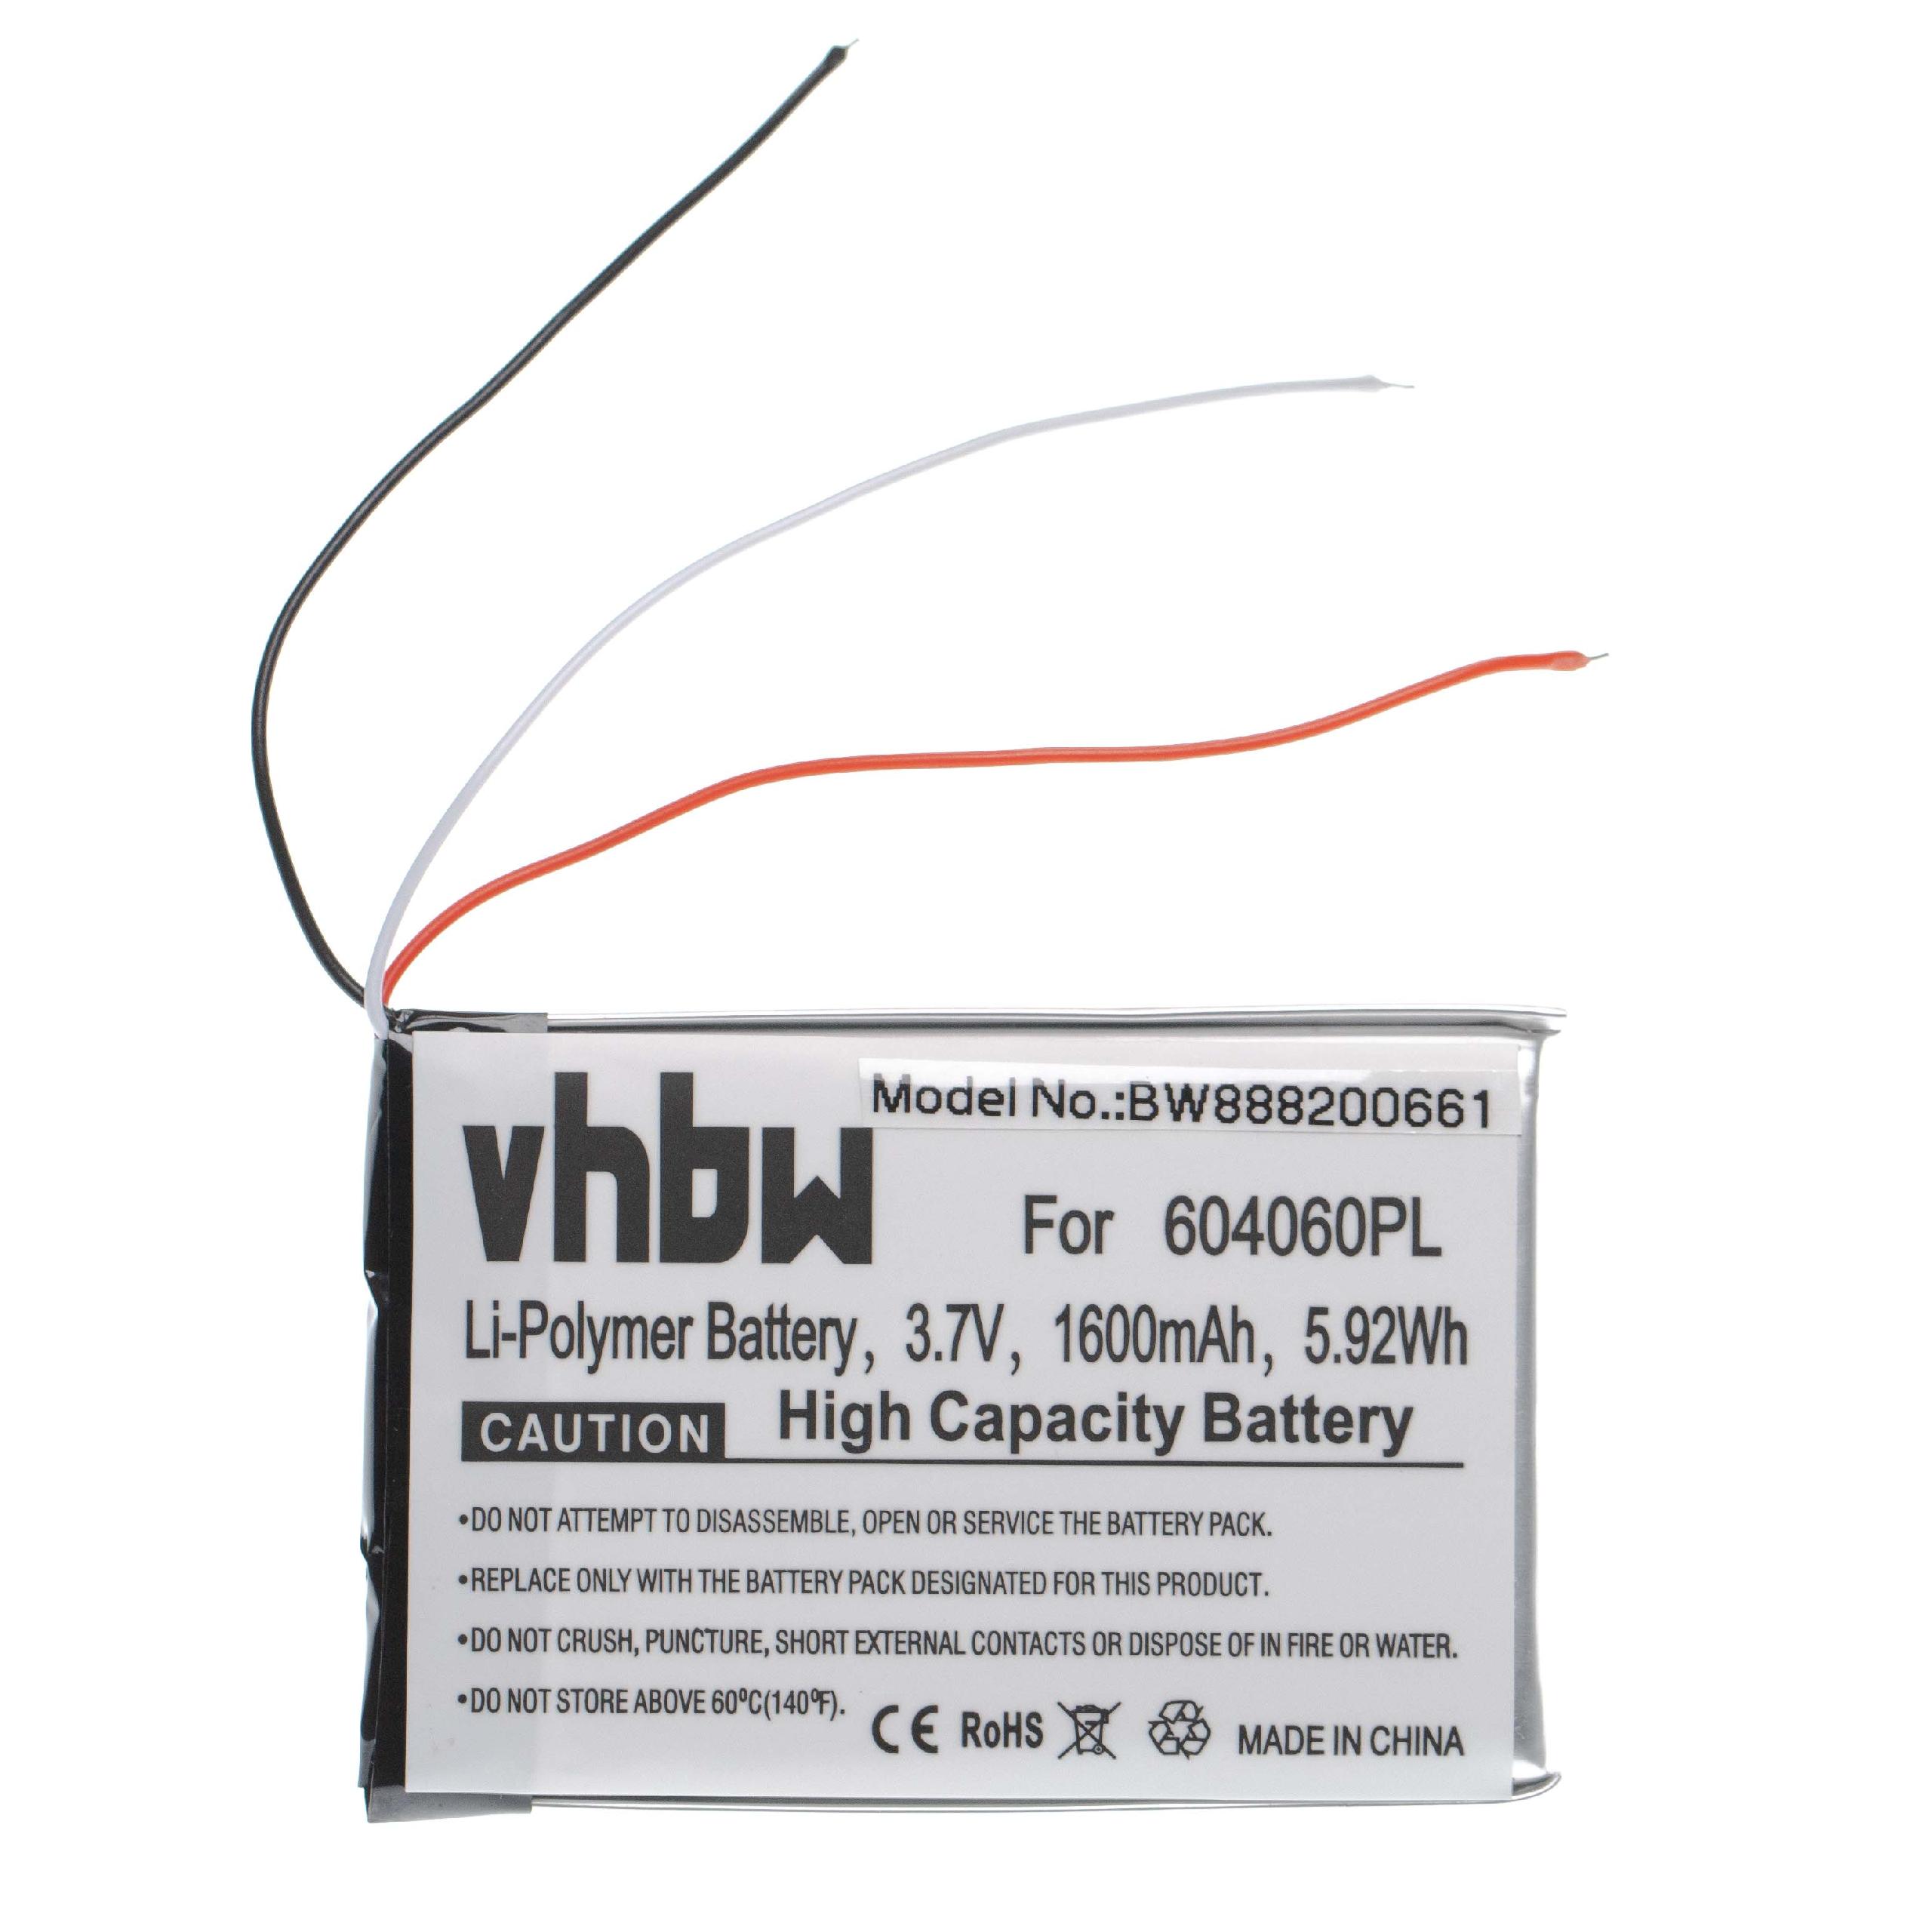 Batterie remplace Becker 604060, 604060PL pour navigation GPS - 1600mAh 3,7V Li-polymère